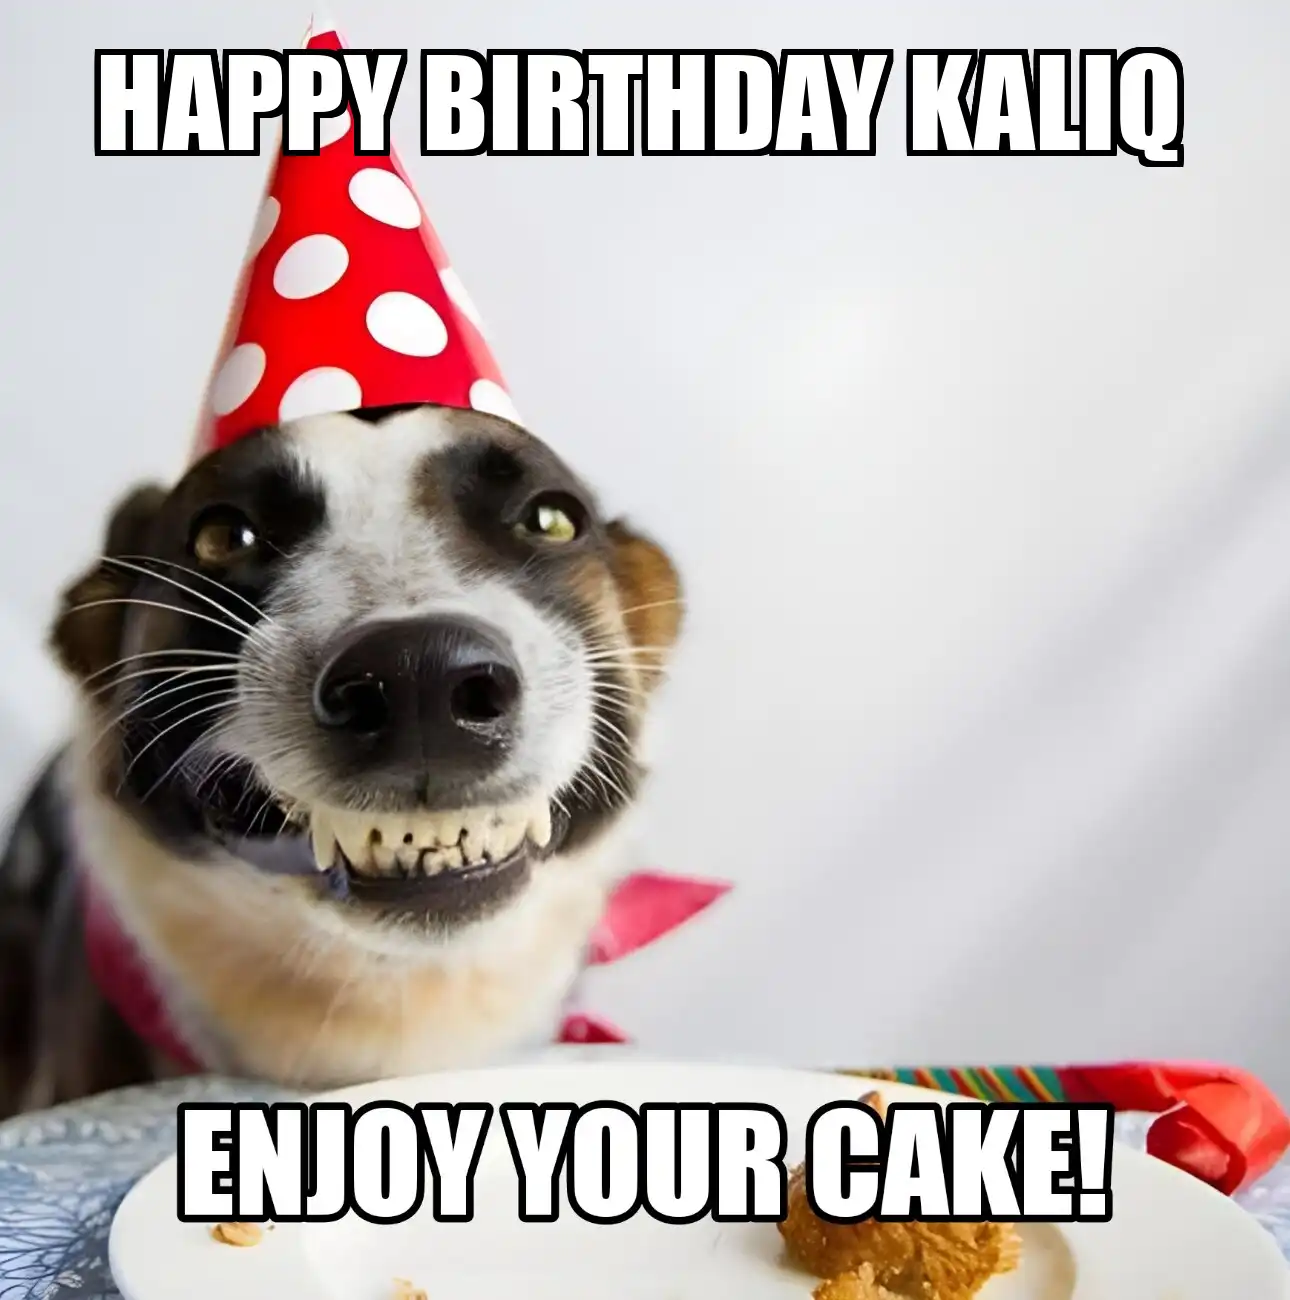 Happy Birthday Kaliq Enjoy Your Cake Dog Meme